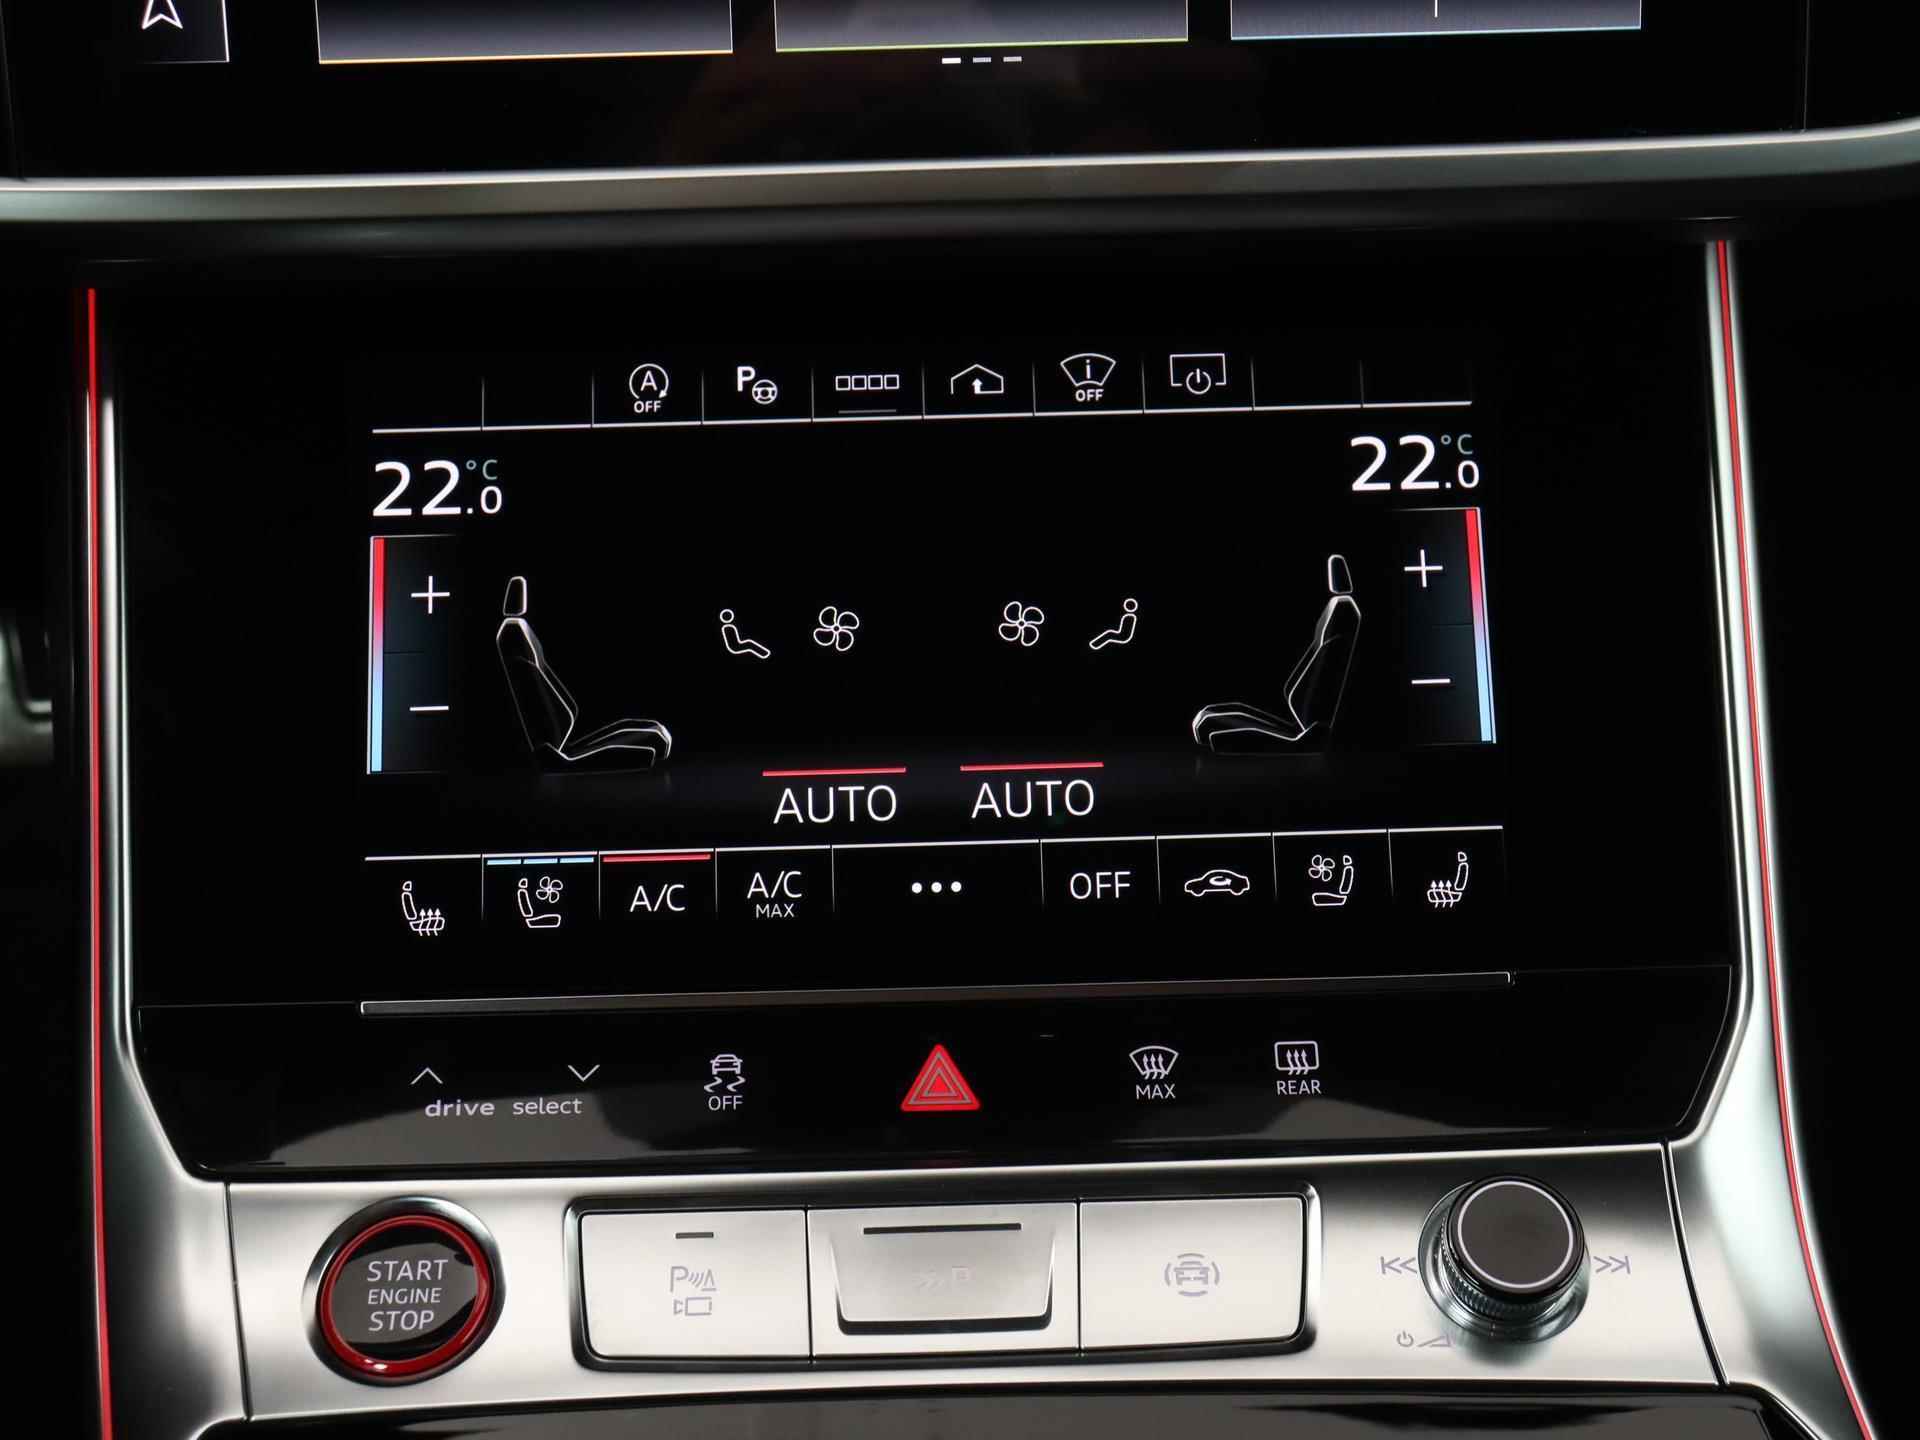 Audi RS6 TFSI quattro 600 PK | Head-up display | Bang & Olufsen Soundsystem | 22 inch lm velgen | RS Dynamic Pakket Plus | RS Design pakket Rood |Optiekpakket Zwart Plus | Panorama dak | RS Sportuitlaat | Keramische remschijven Rood | RS Sportonderstel Plus | Servosluiting deuren | Nu € 36.129,- ACTIEKORTING! | DIRECT LEVERBAAR! | NIEUWE AUTO! | - 14/35